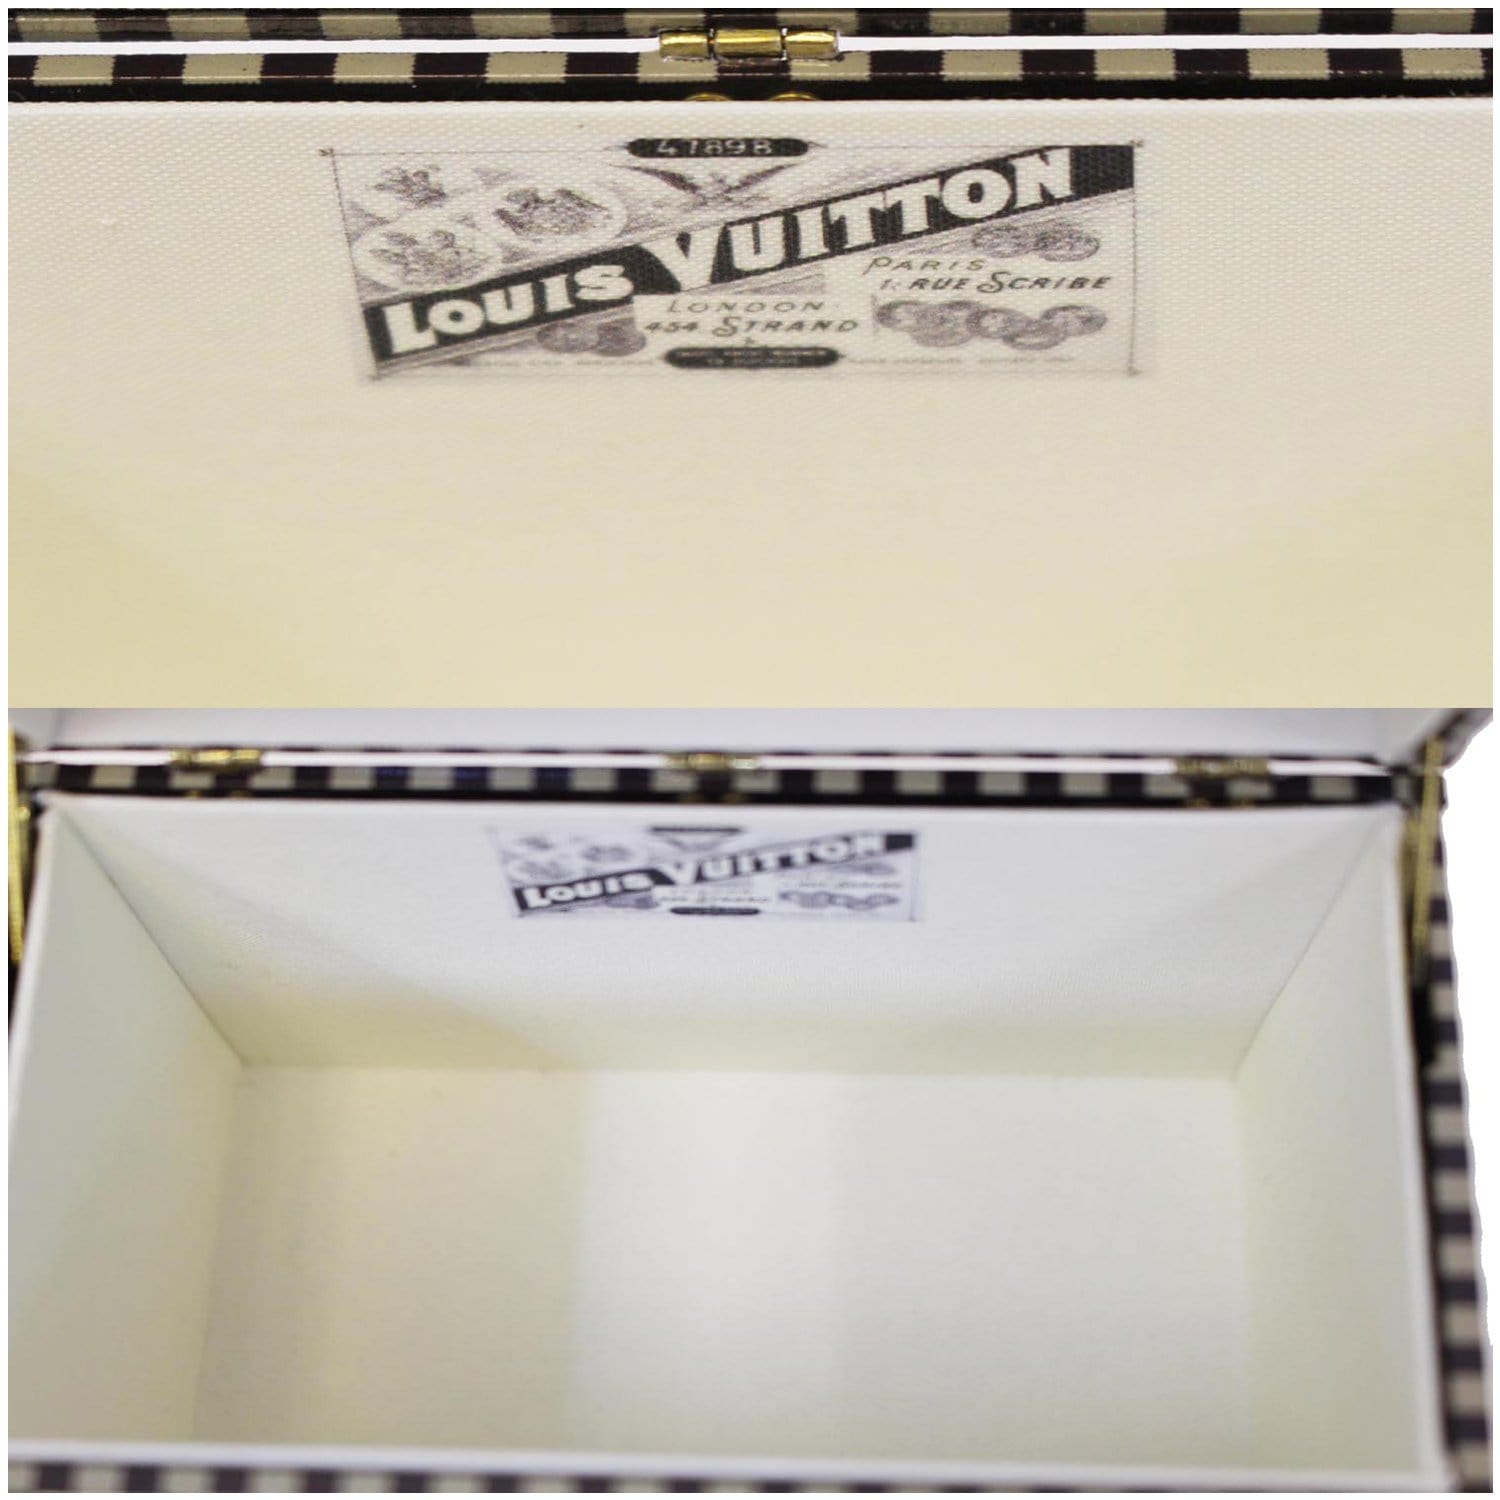 LOUIS VUITTON Mini Malle Chapeaux Damier Jewelry Box - 10% OFF